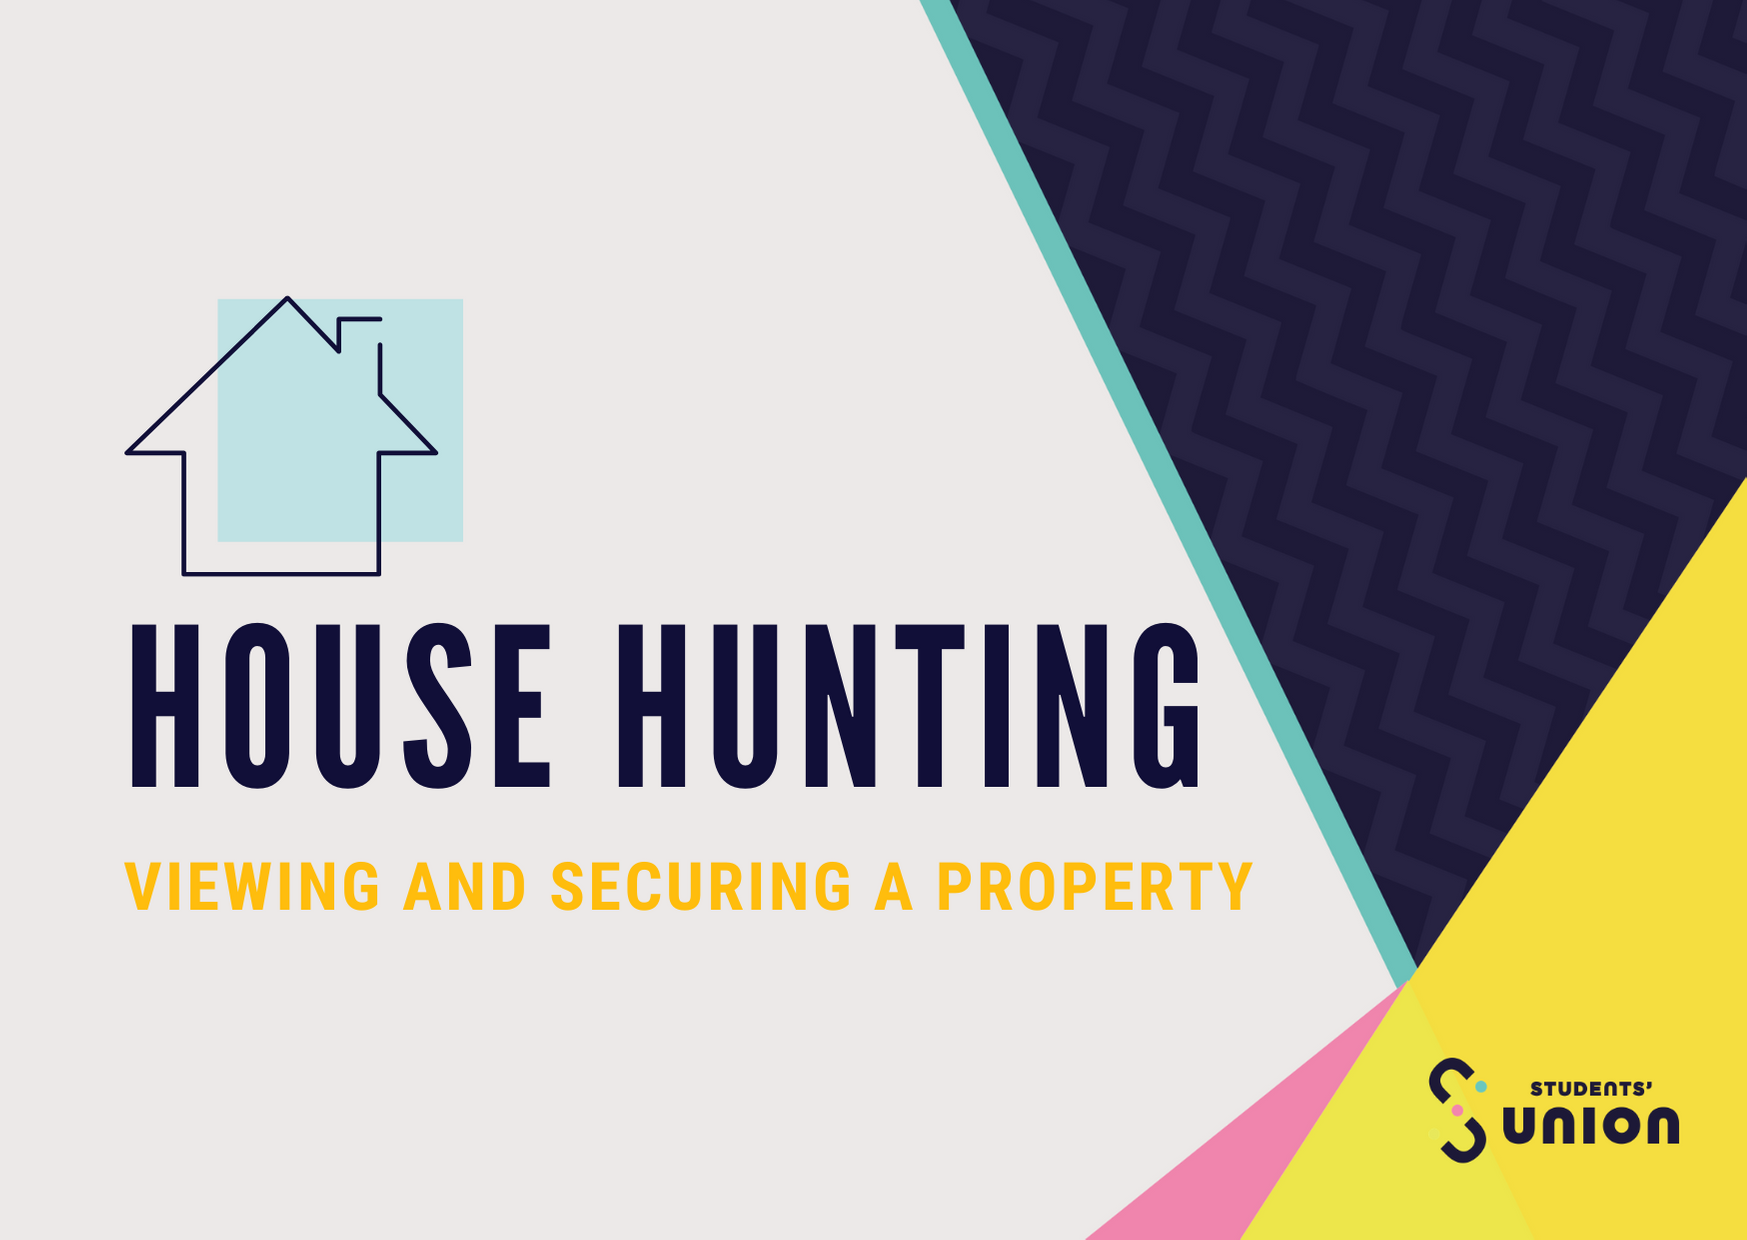 home hunt link housing